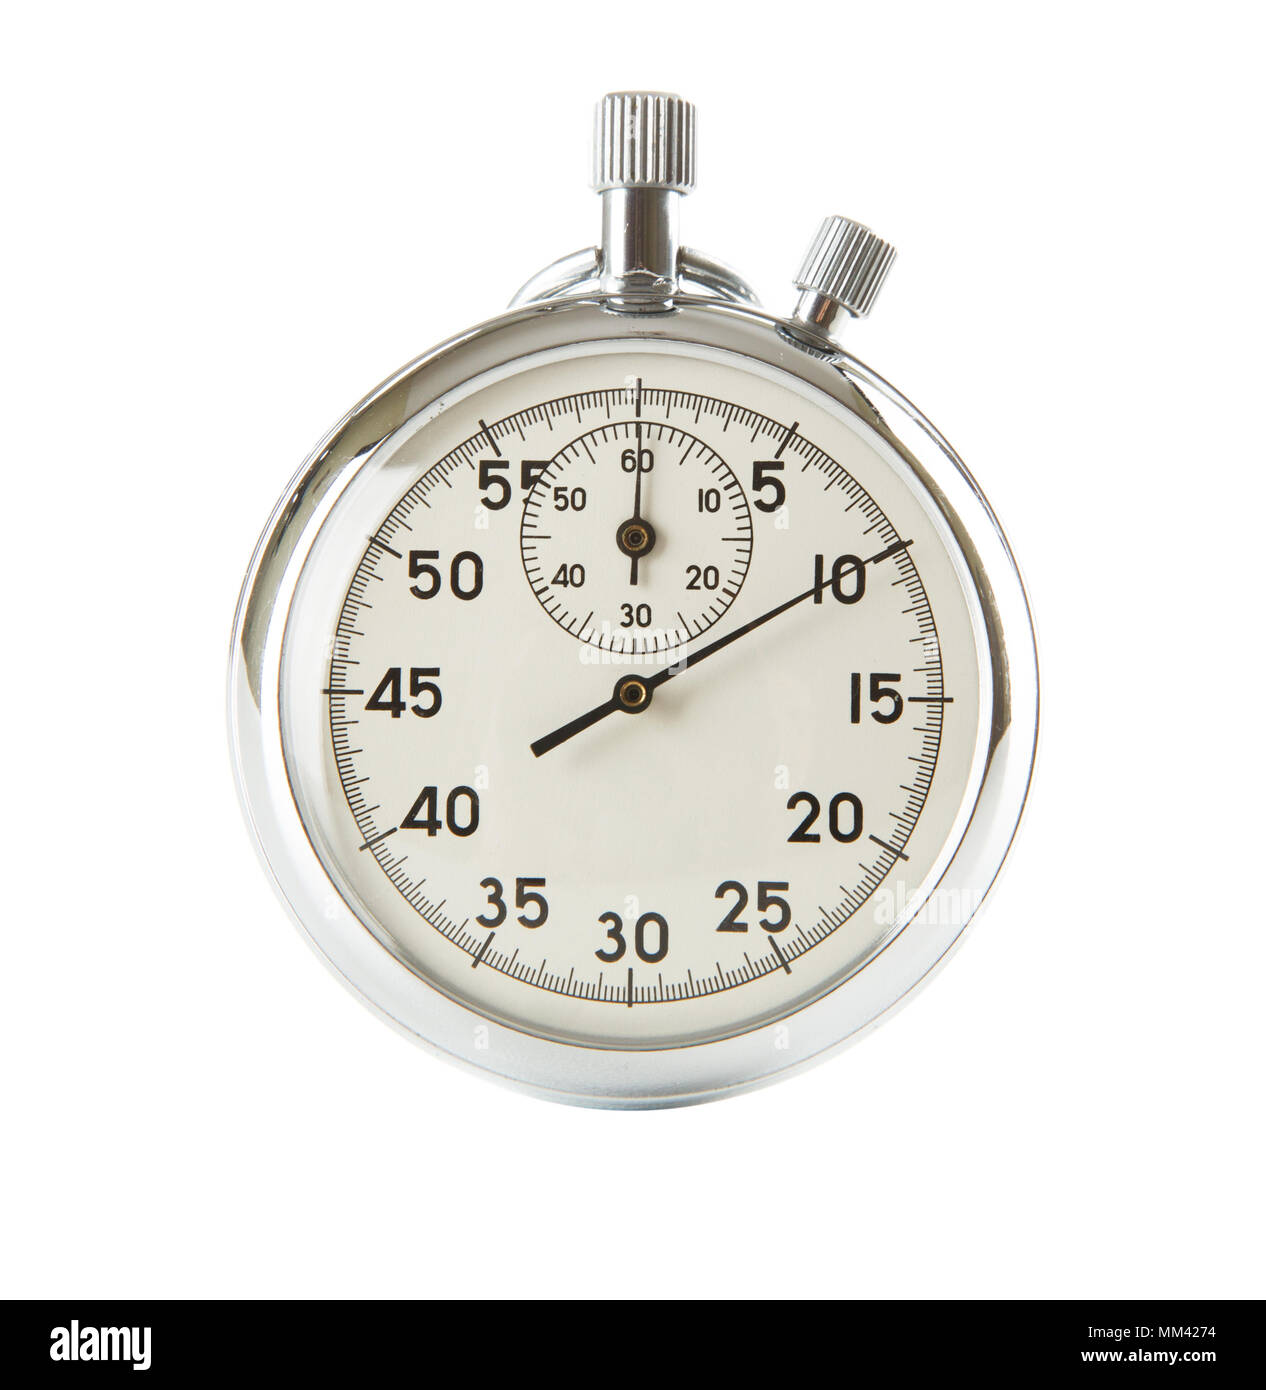 Chronomètre analogique sur fond blanc Banque D'Images